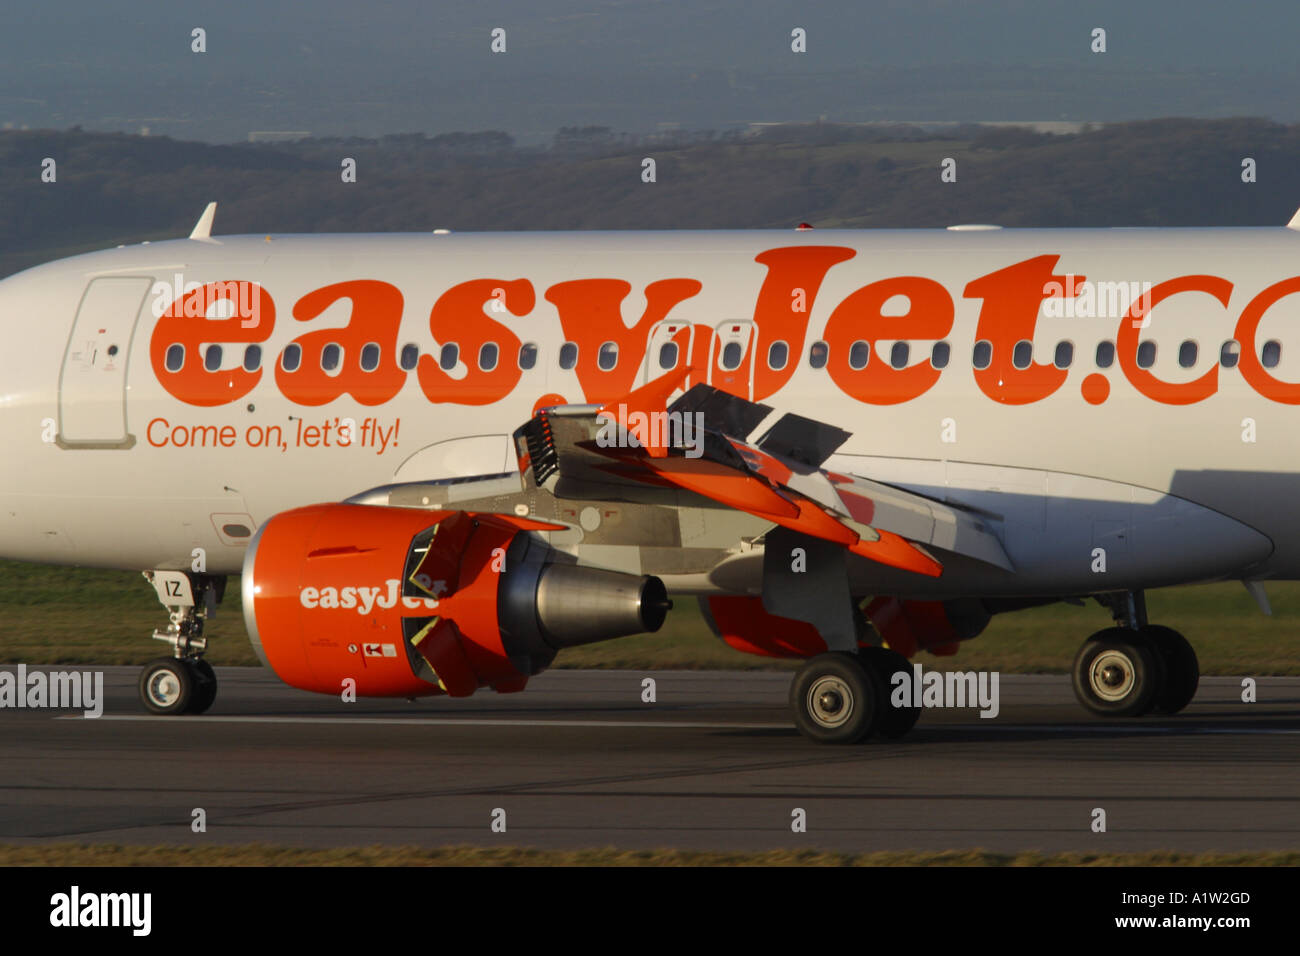 El presupuesto de las aerolíneas de bajo coste Easyjet Airbus A320 Foto de stock